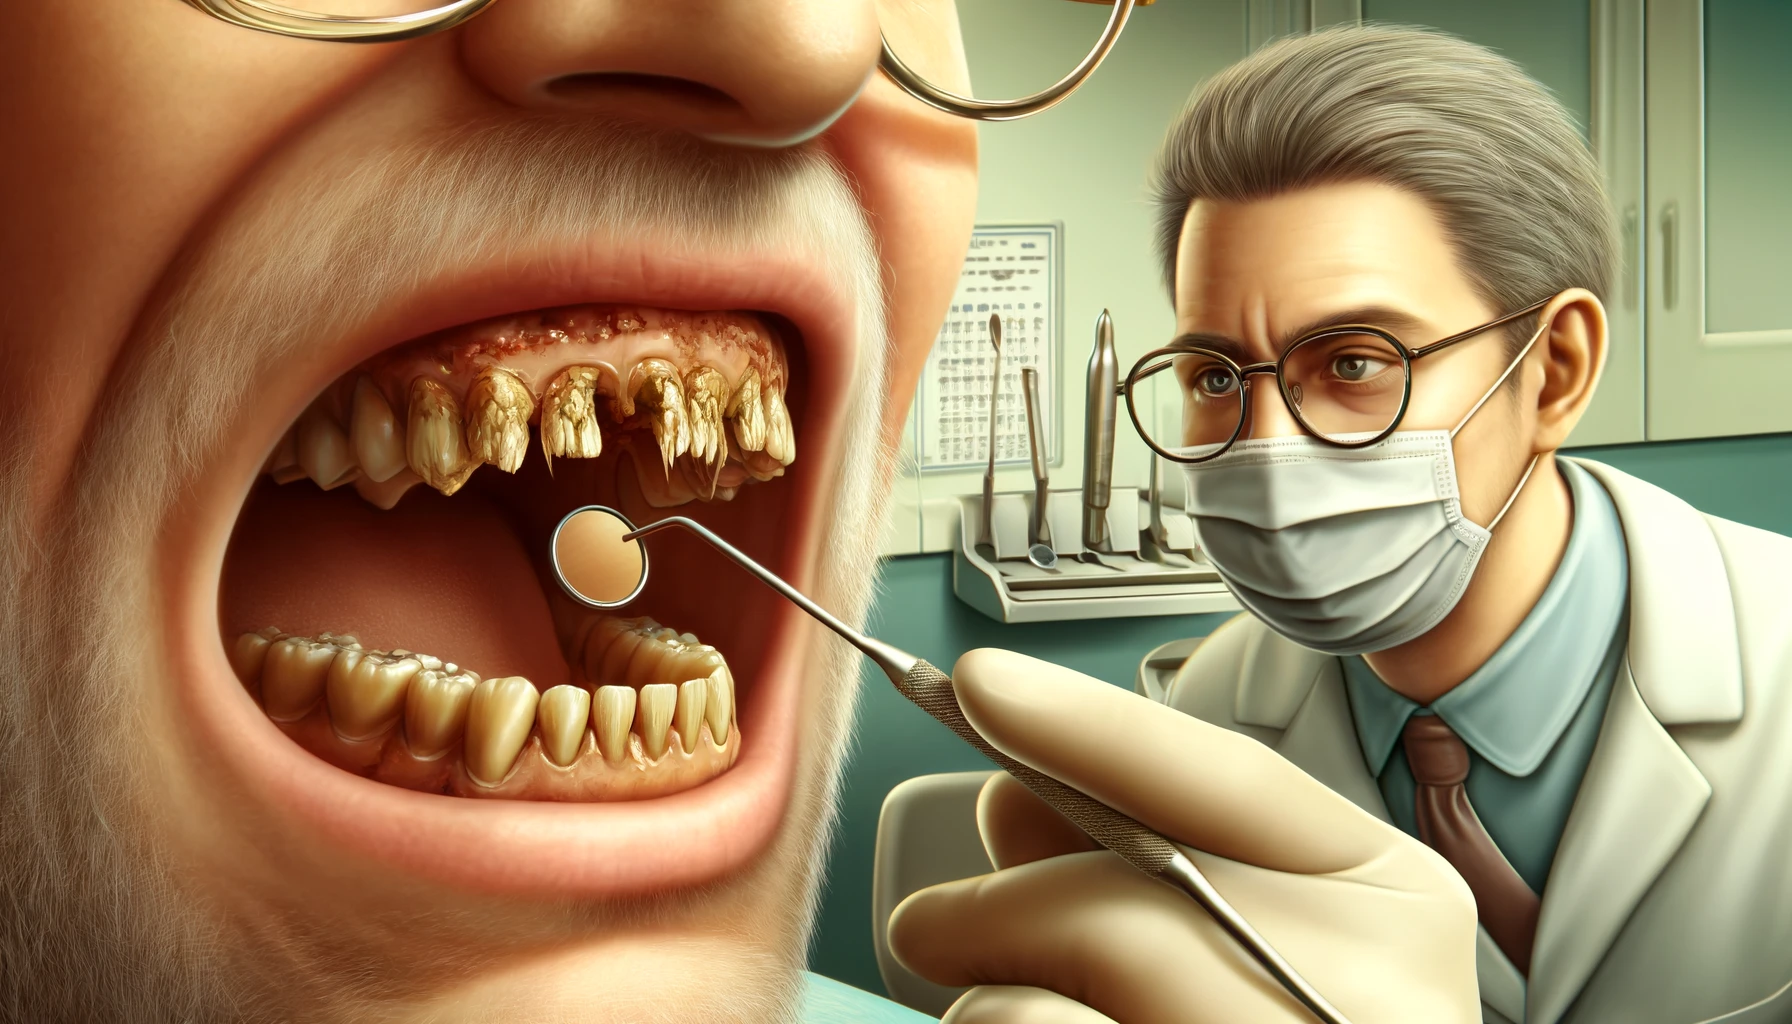 Bilde som viser tidlige tegn på tannslitasje hos tannlegen